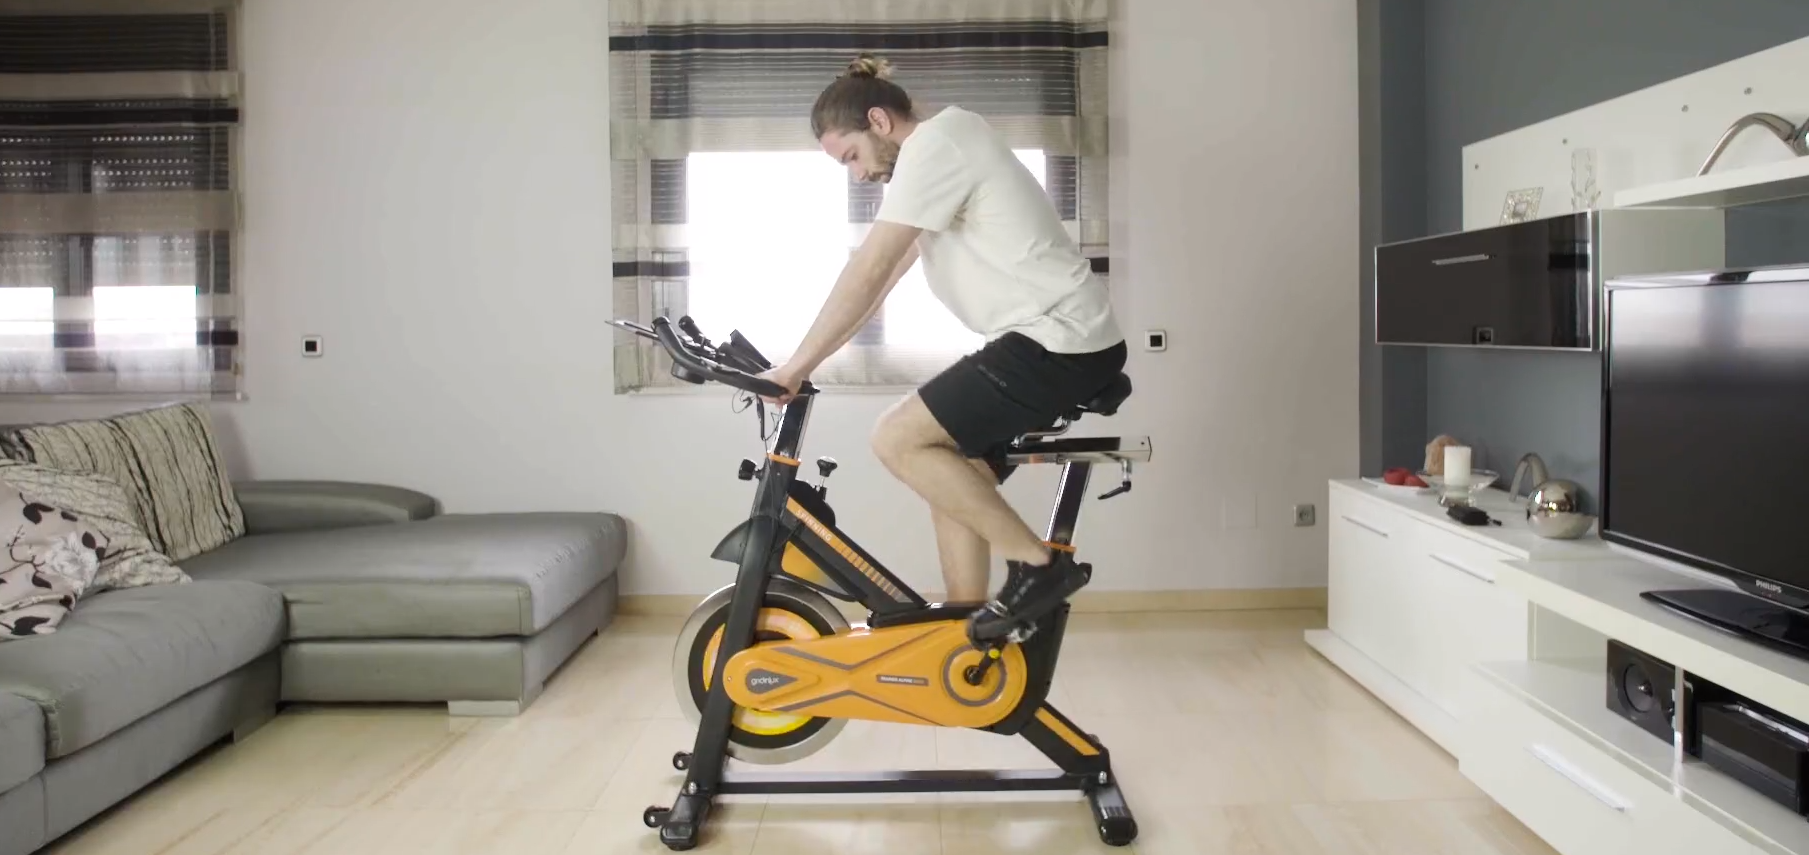 Oferta de Prime Day de : bicicleta estática 'smart' con sillín  regulable y apoyo lumbar por solo 69 euros